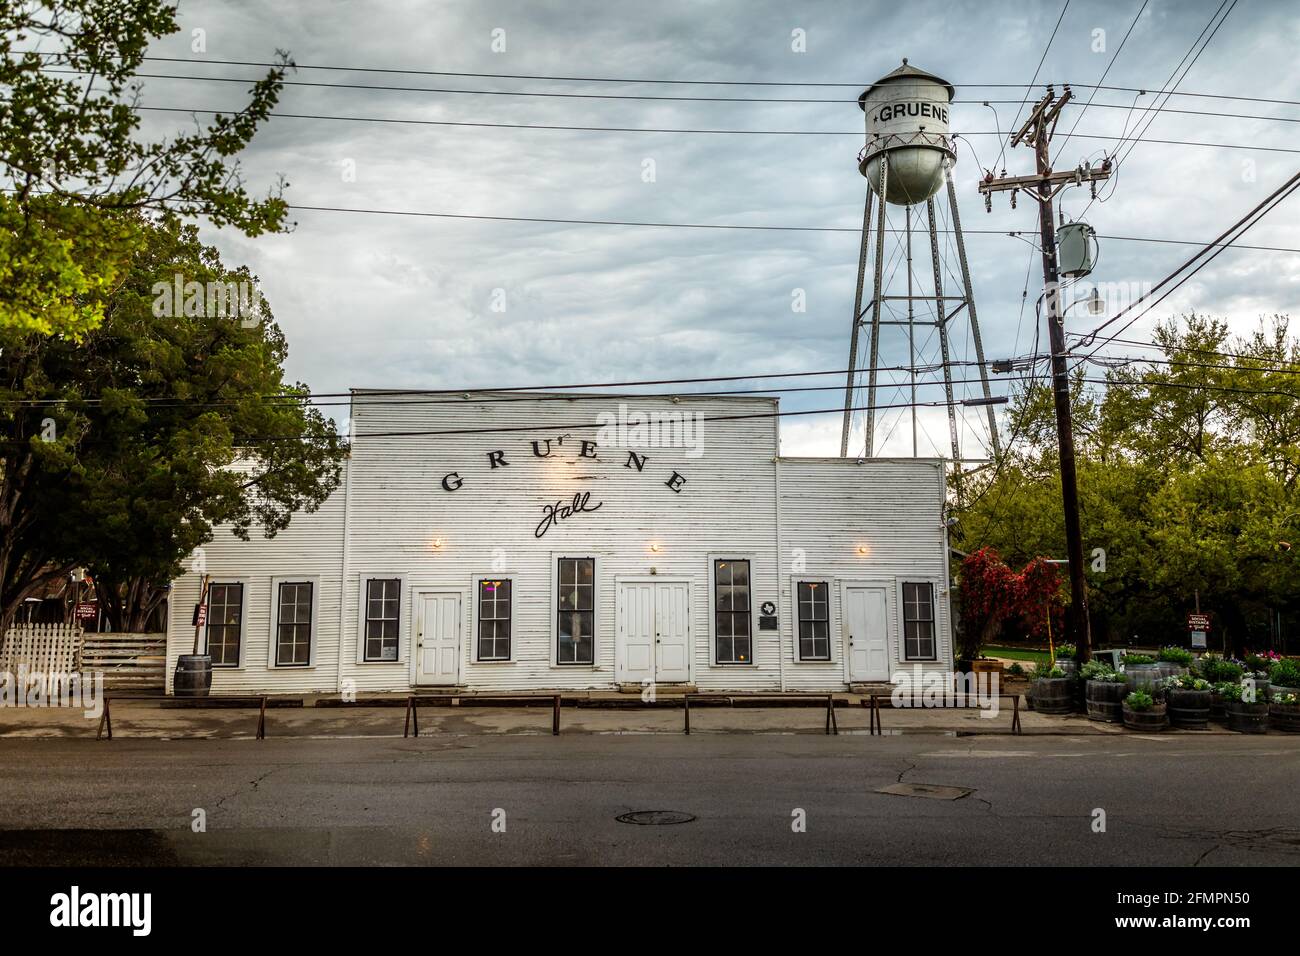 GRUENE, TEXAS - MÄRZ 28 2021: Die Gruene Hall ist die älteste, kontinuierlich in Betrieb befindliche Tanzhalle in Texas, die 1878 mit einem Wasserturm im Hintergrund erbaut wurde Stockfoto